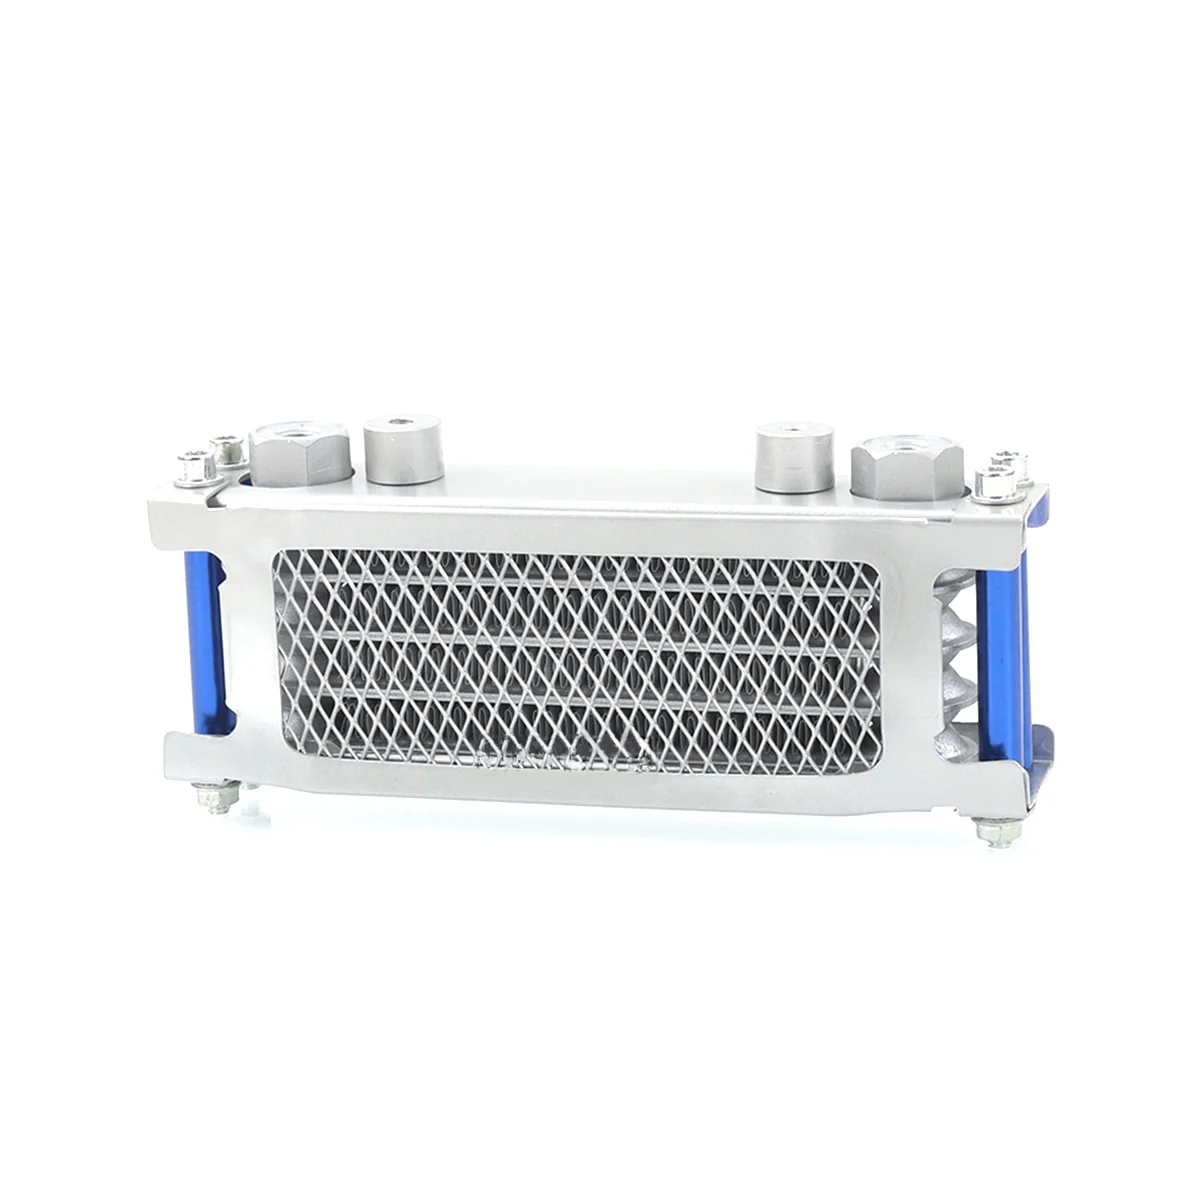 

Интерфейсный радиатор M10, масляный радиатор, алюминиевая система охлаждения для мотоцикла 50-160 куб. См, грязевой питбайк, серебристый